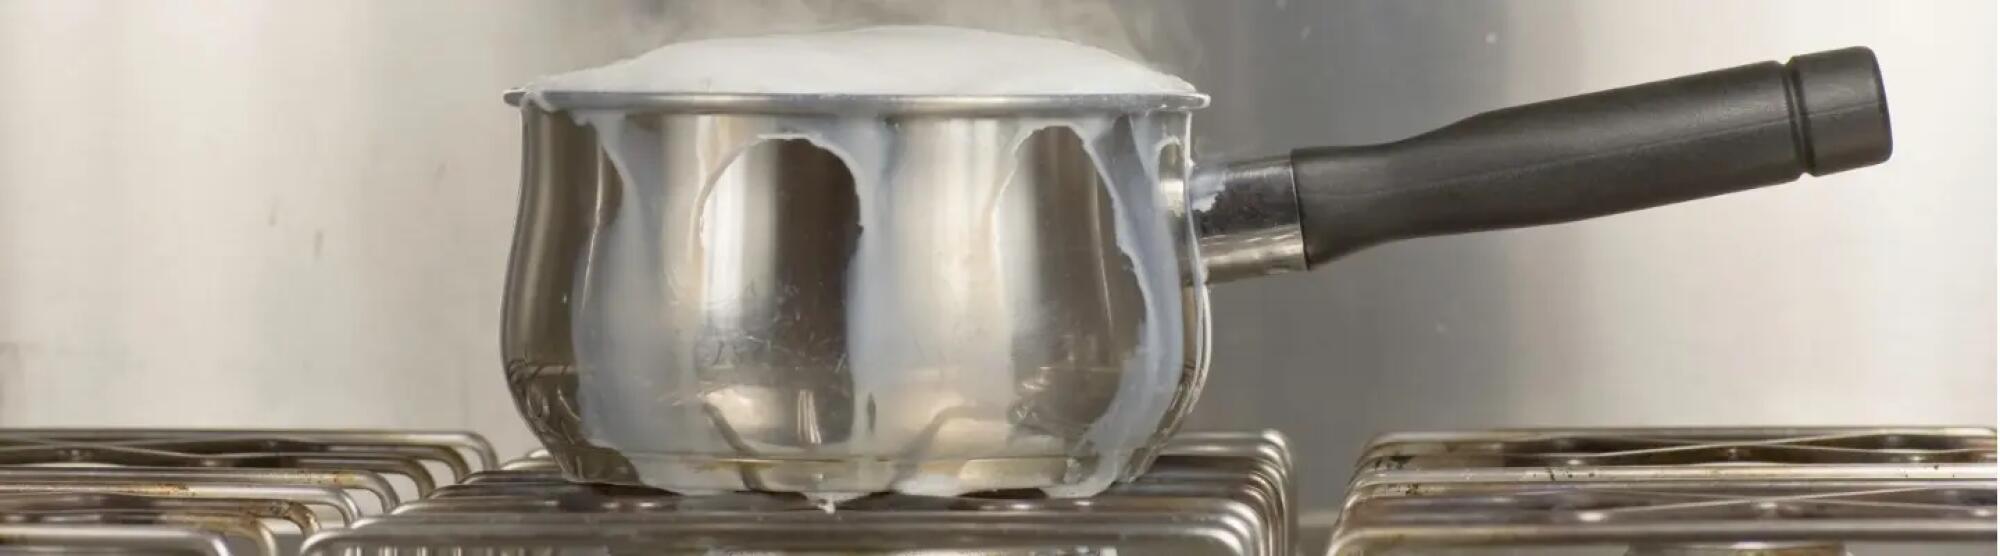 LA02_saucepan-of-boiling-milk-picture-id123694074